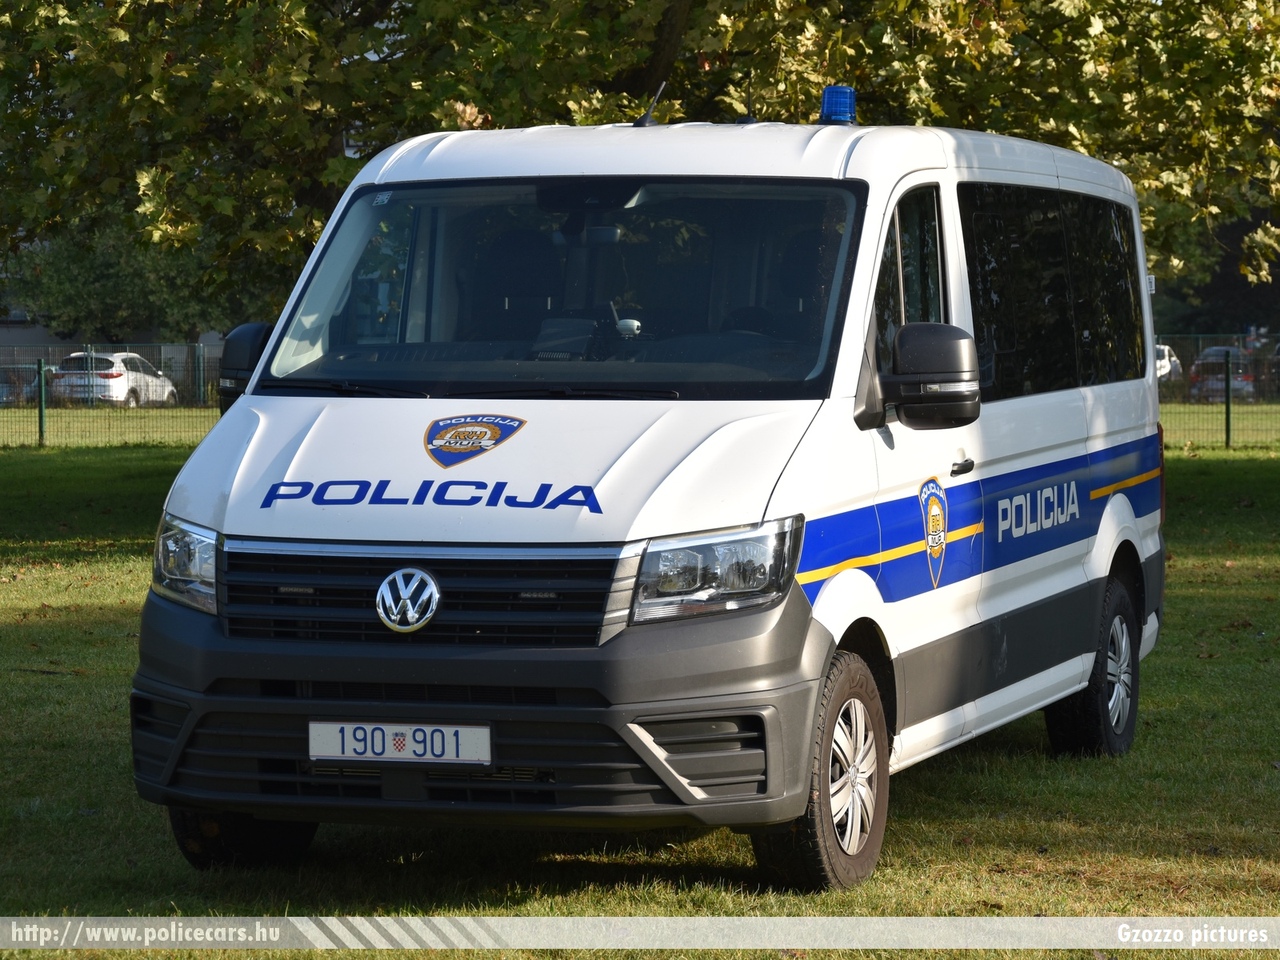 Volkswagen Crafter,  Hrvatska policija, fotó: Gzozzo pictures
Keywords: croatian rendőr rendőrautó rendőrség horvát Horvátország policecar police Croatia